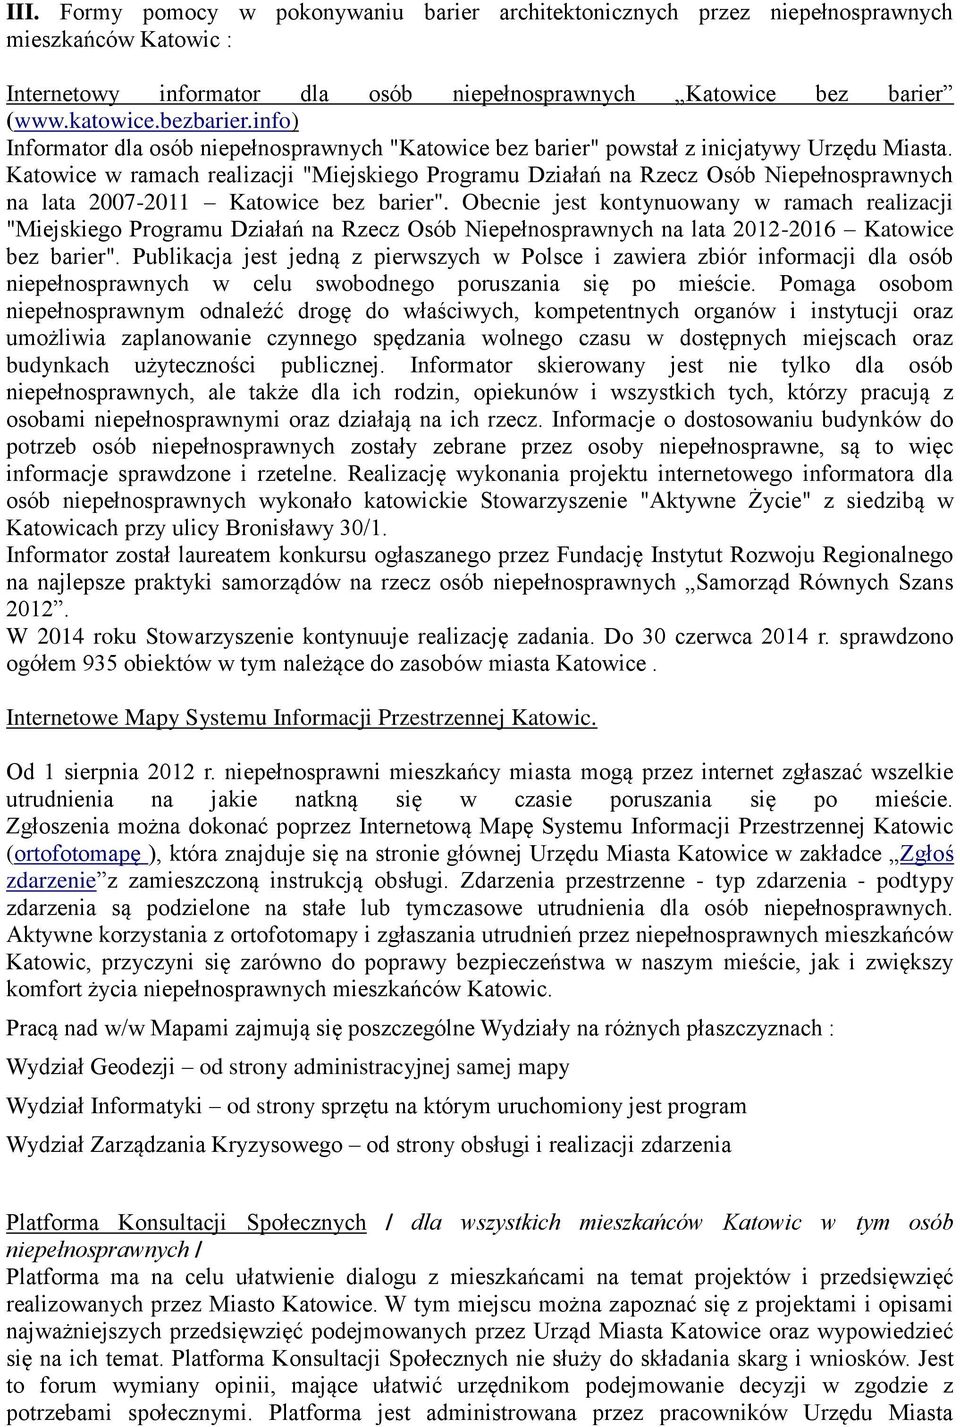 Katowice w ramach realizacji "Miejskiego Programu Działań na Rzecz Osób Niepełnosprawnych na lata 2007-2011 Katowice bez barier".